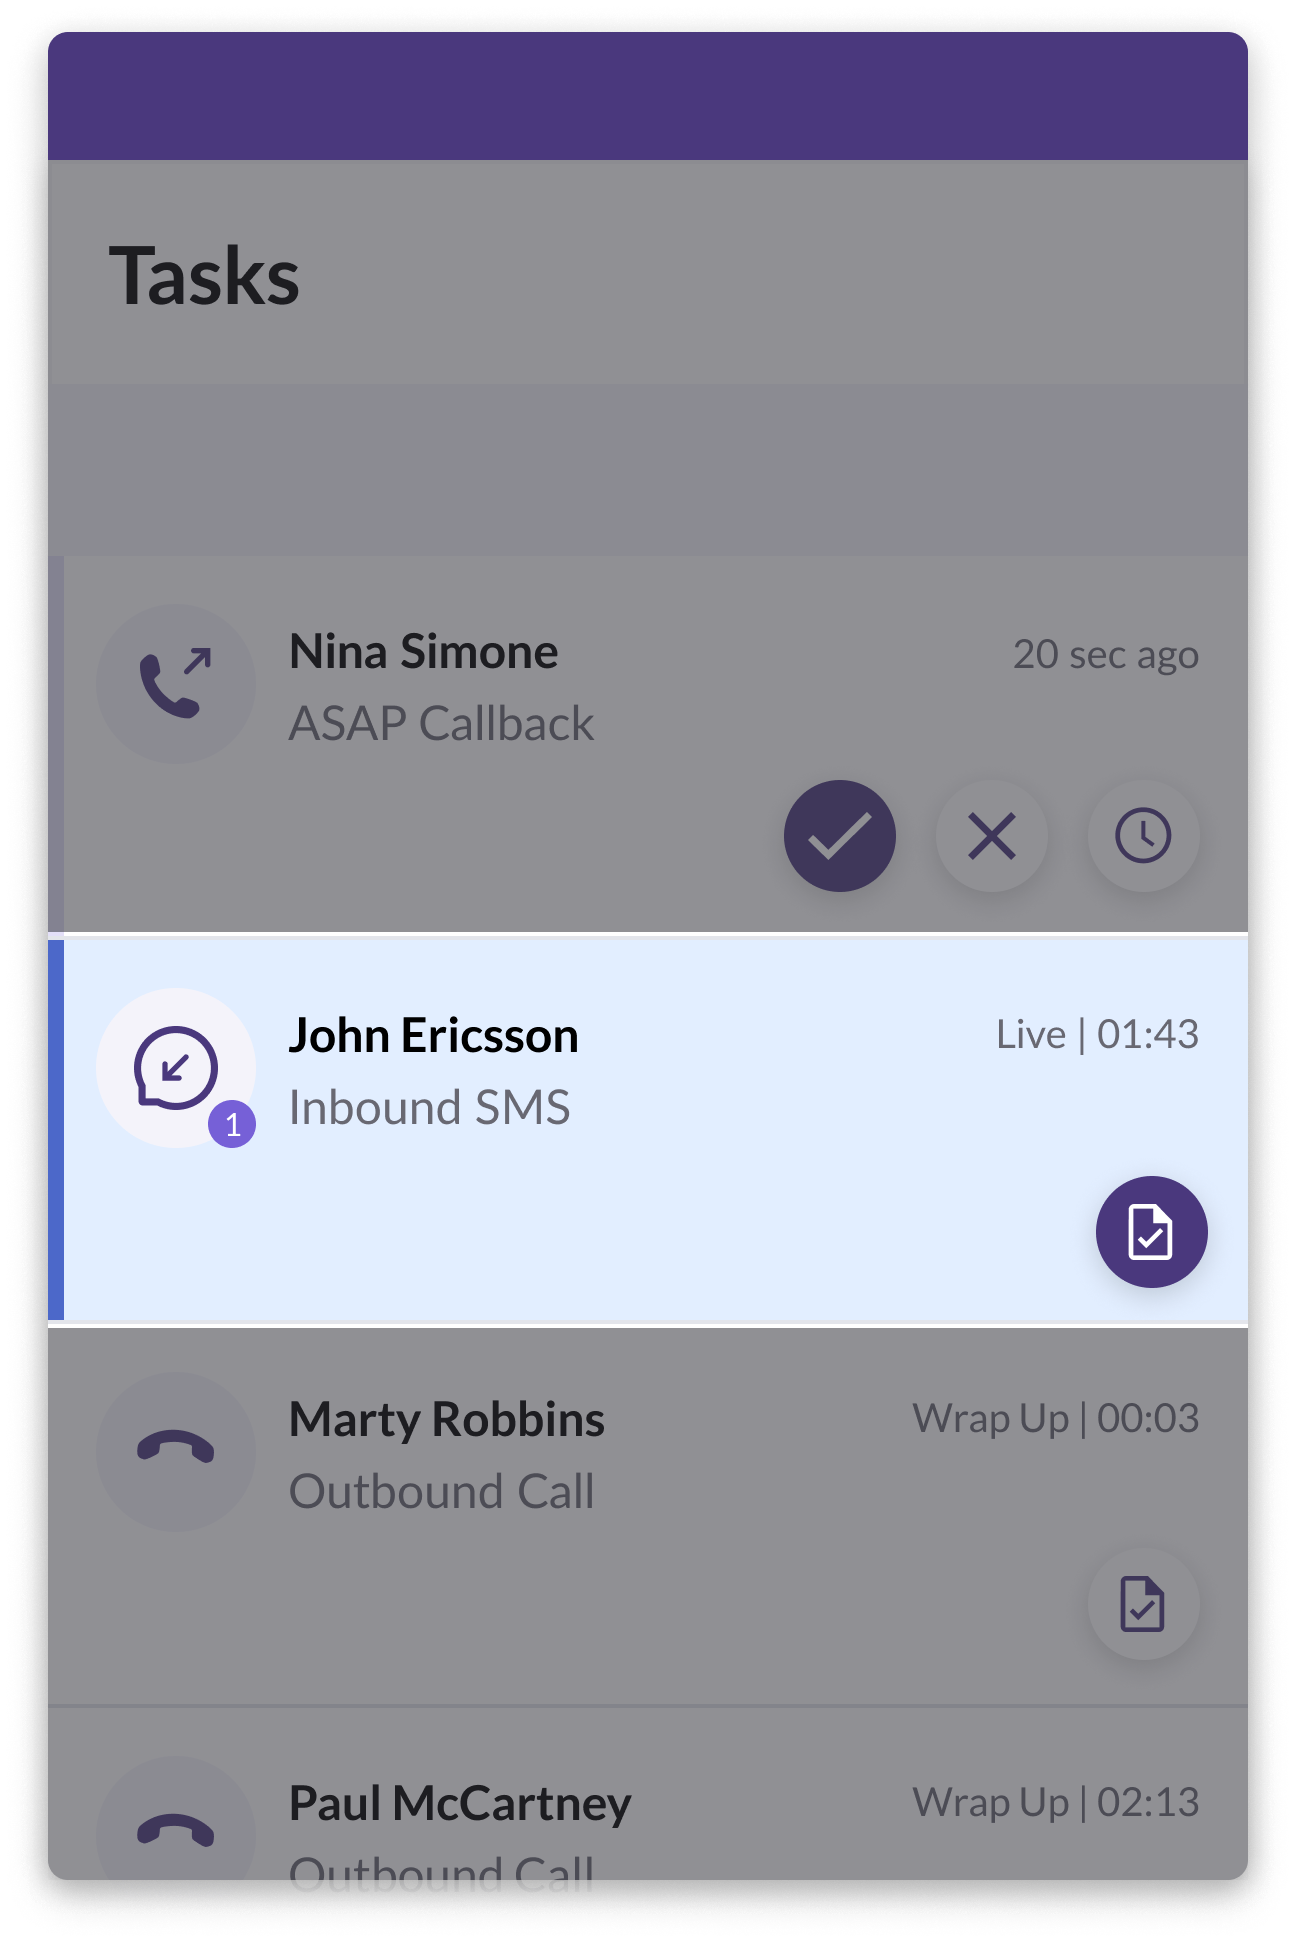 Inbound SMS Task with Unread Message